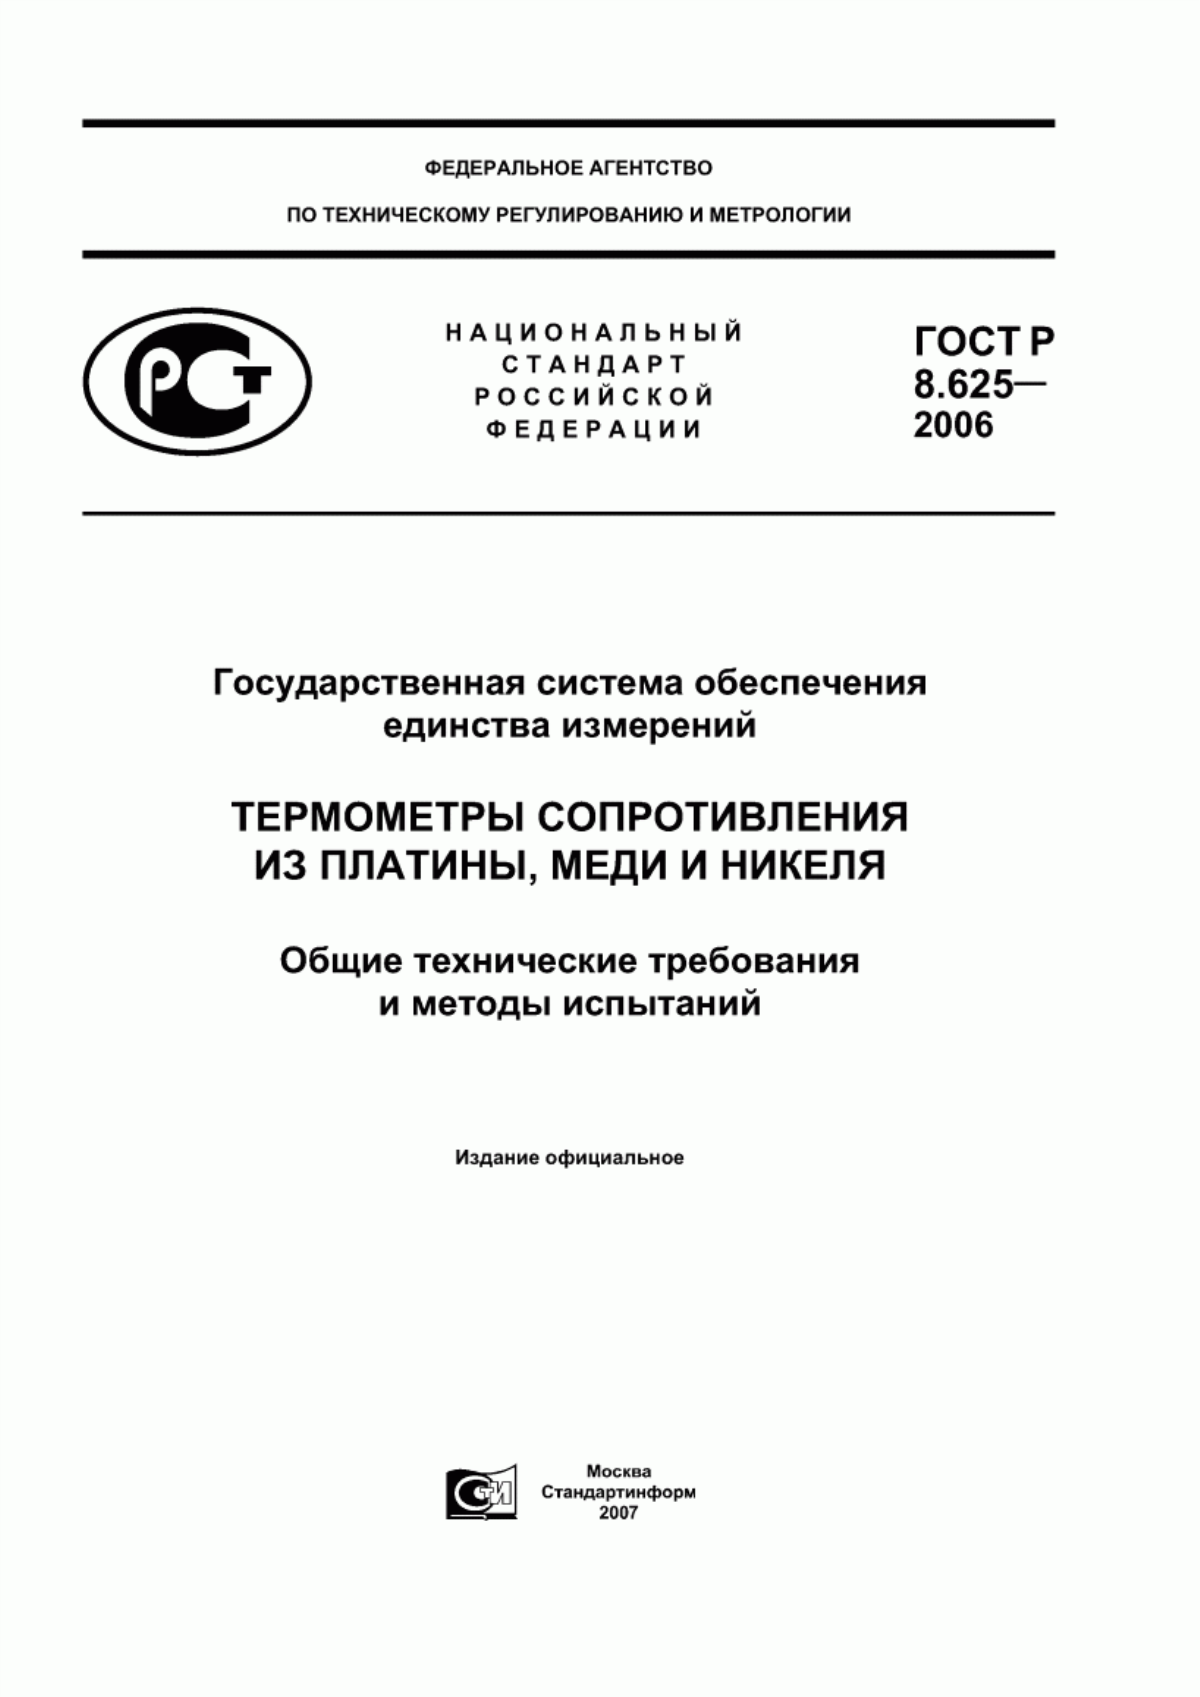 ГОСТ Р 8.625-2006 Государственная система обеспечения единства измерений. Термометры сопротивления из платины, меди и никеля. Общие технические требования и методы испытаний